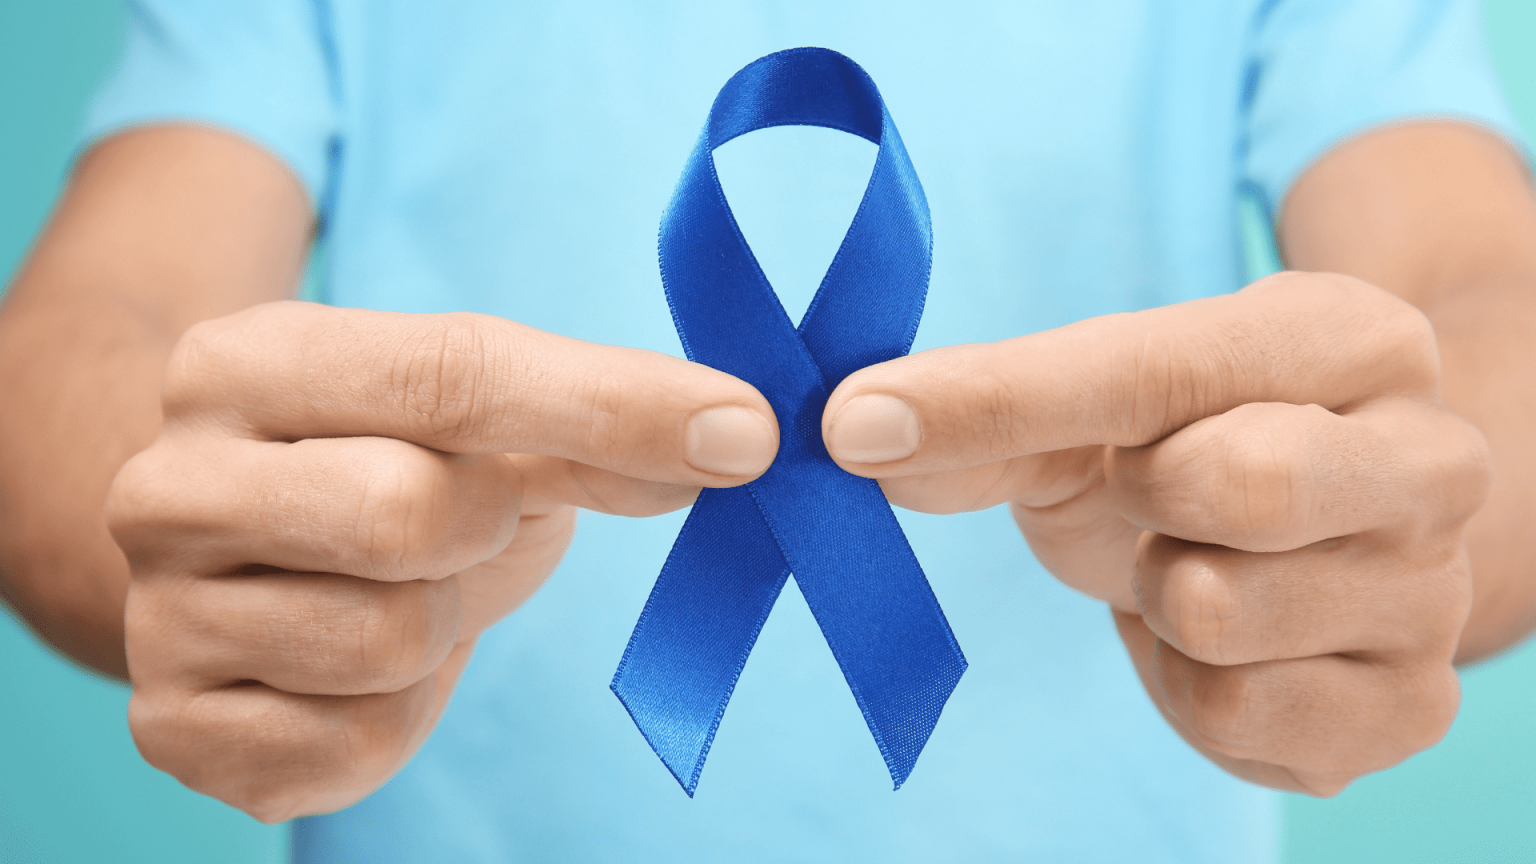 Março Azul: médicos e pacientes se mobilizam em campanha nacional de prevenção ao câncer de intestino